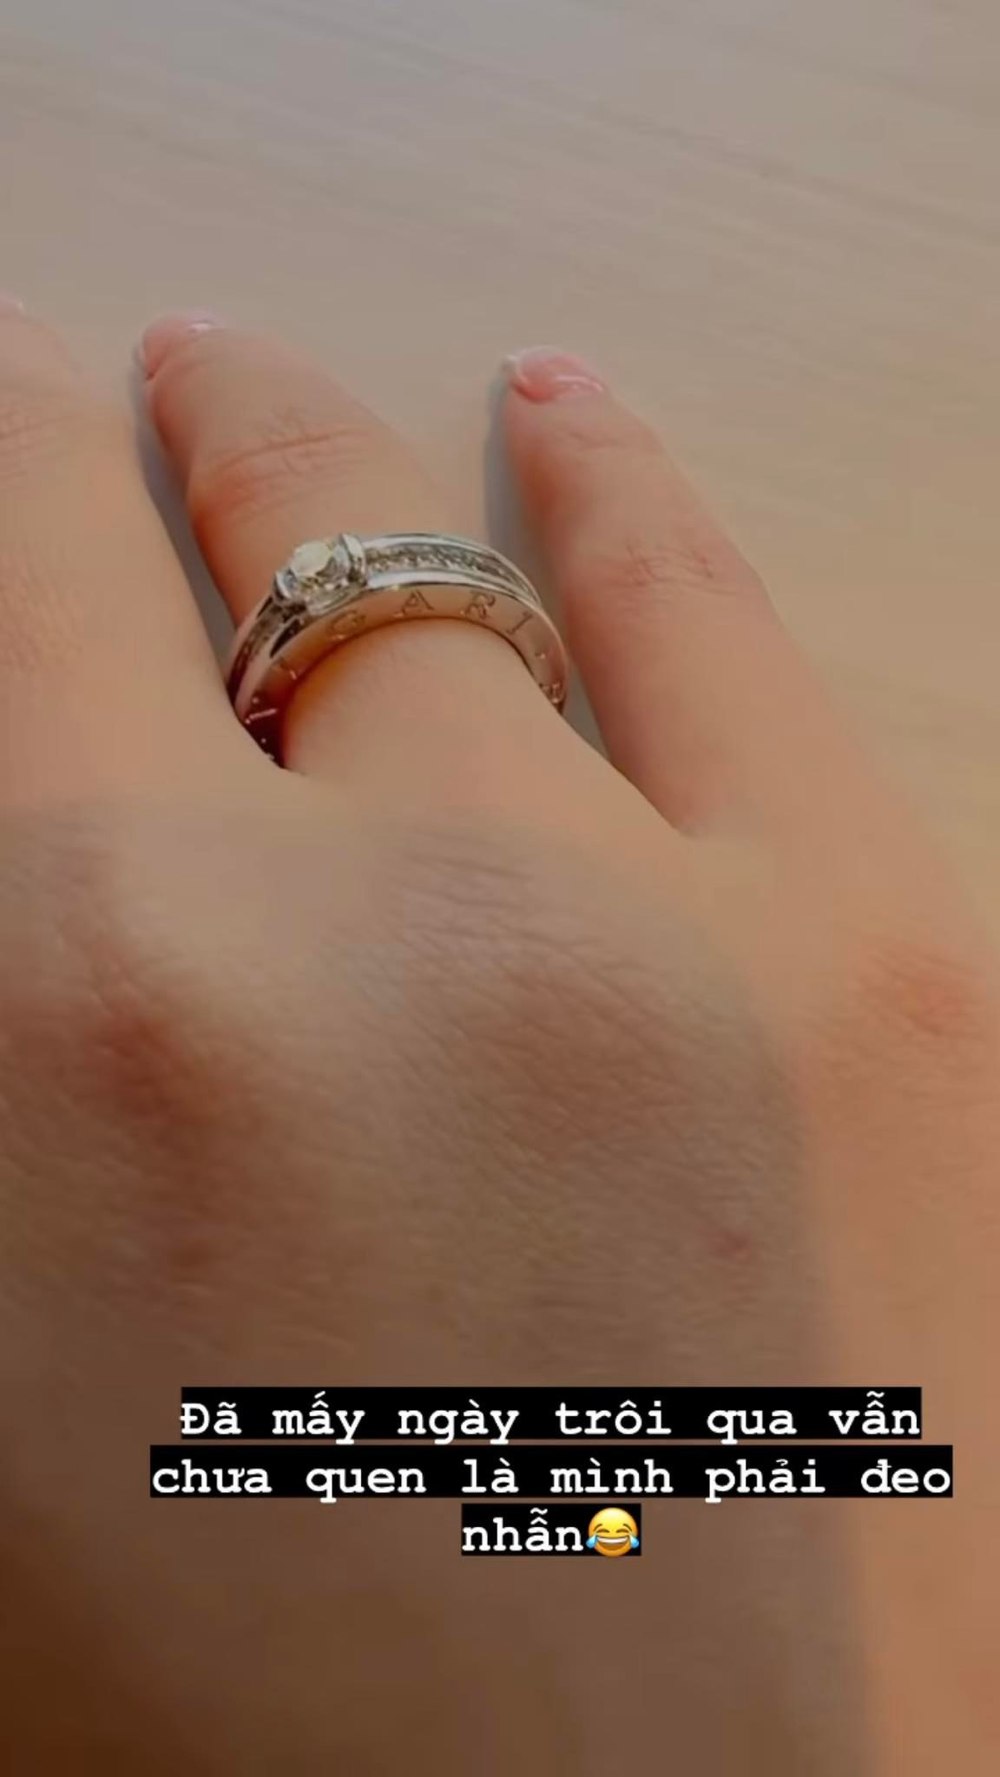  
Nữ diễn viên cho biết cô vẫn khá bỡ ngỡ khi đeo nhẫn cưới sau hôn lễ. (Ảnh: Instagram @minhhang2206) - Tin sao Viet - Tin tuc sao Viet - Scandal sao Viet - Tin tuc cua Sao - Tin cua Sao